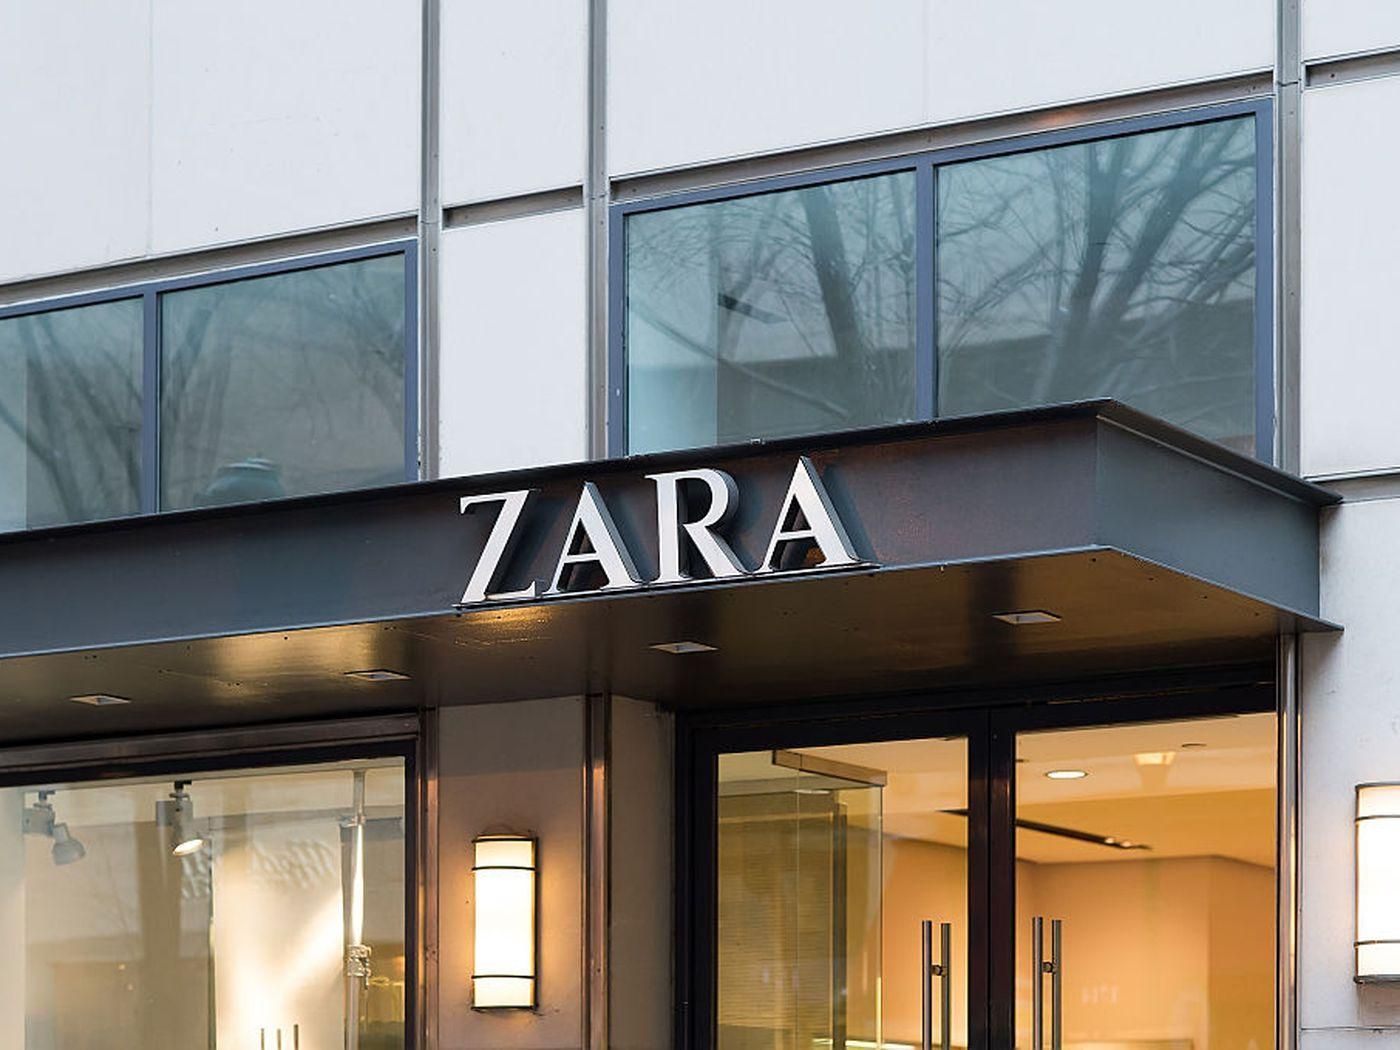 Інноваційний дизайн: Zara відкриває у Нью Йорку найяскравішу вітрину у своїй історії - відео - Дизайн 24